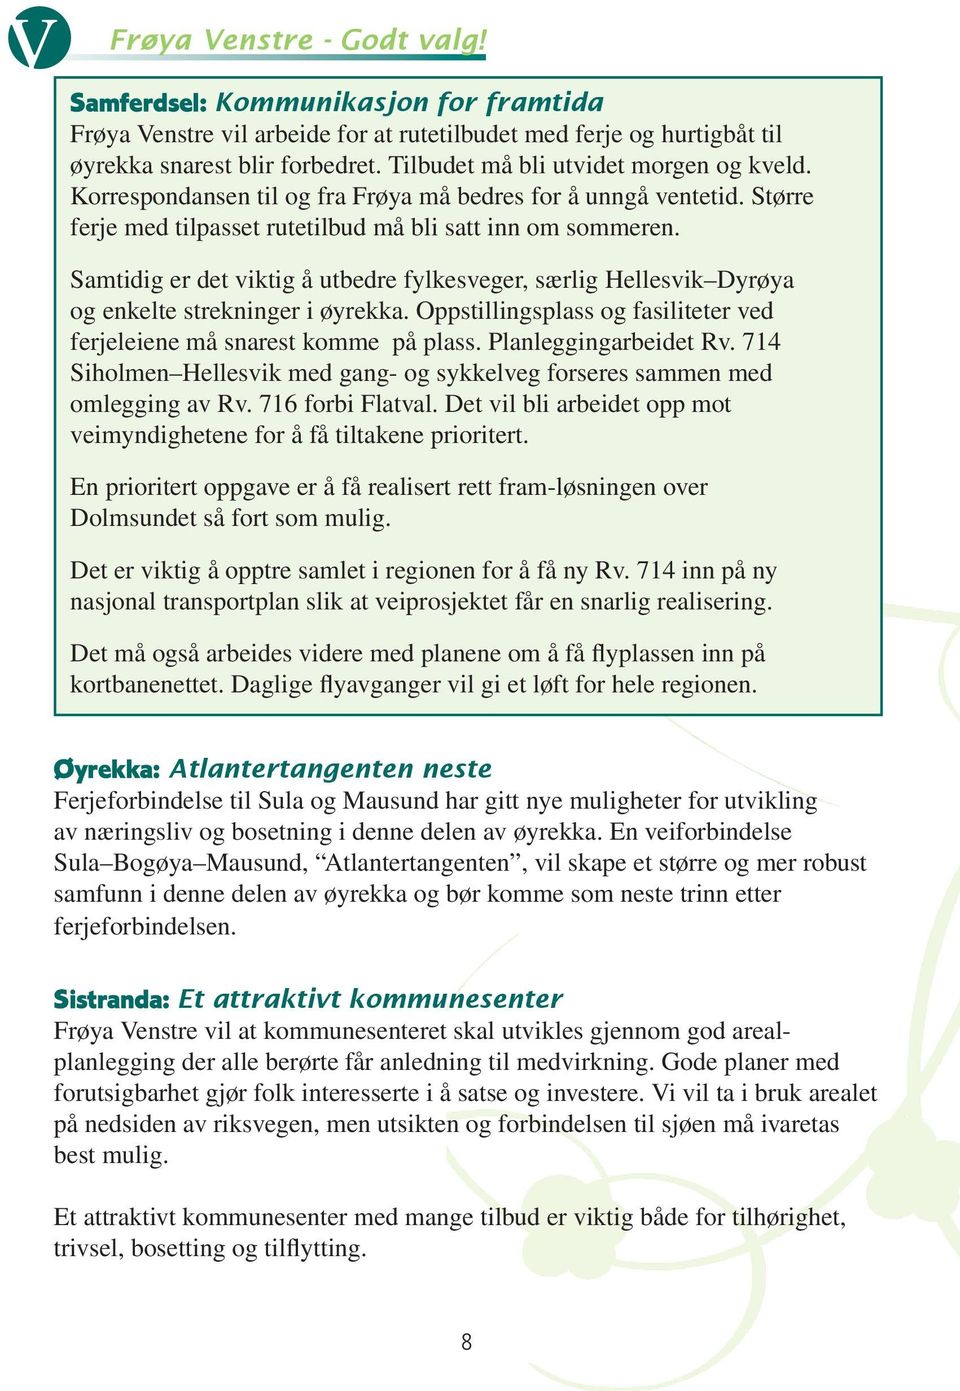 Samtidig er det viktig å utbedre fylkesveger, særlig Hellesvik Dyrøya og enkelte strekninger i øyrekka. Oppstillingsplass og fasiliteter ved ferjeleiene må snarest komme på plass.